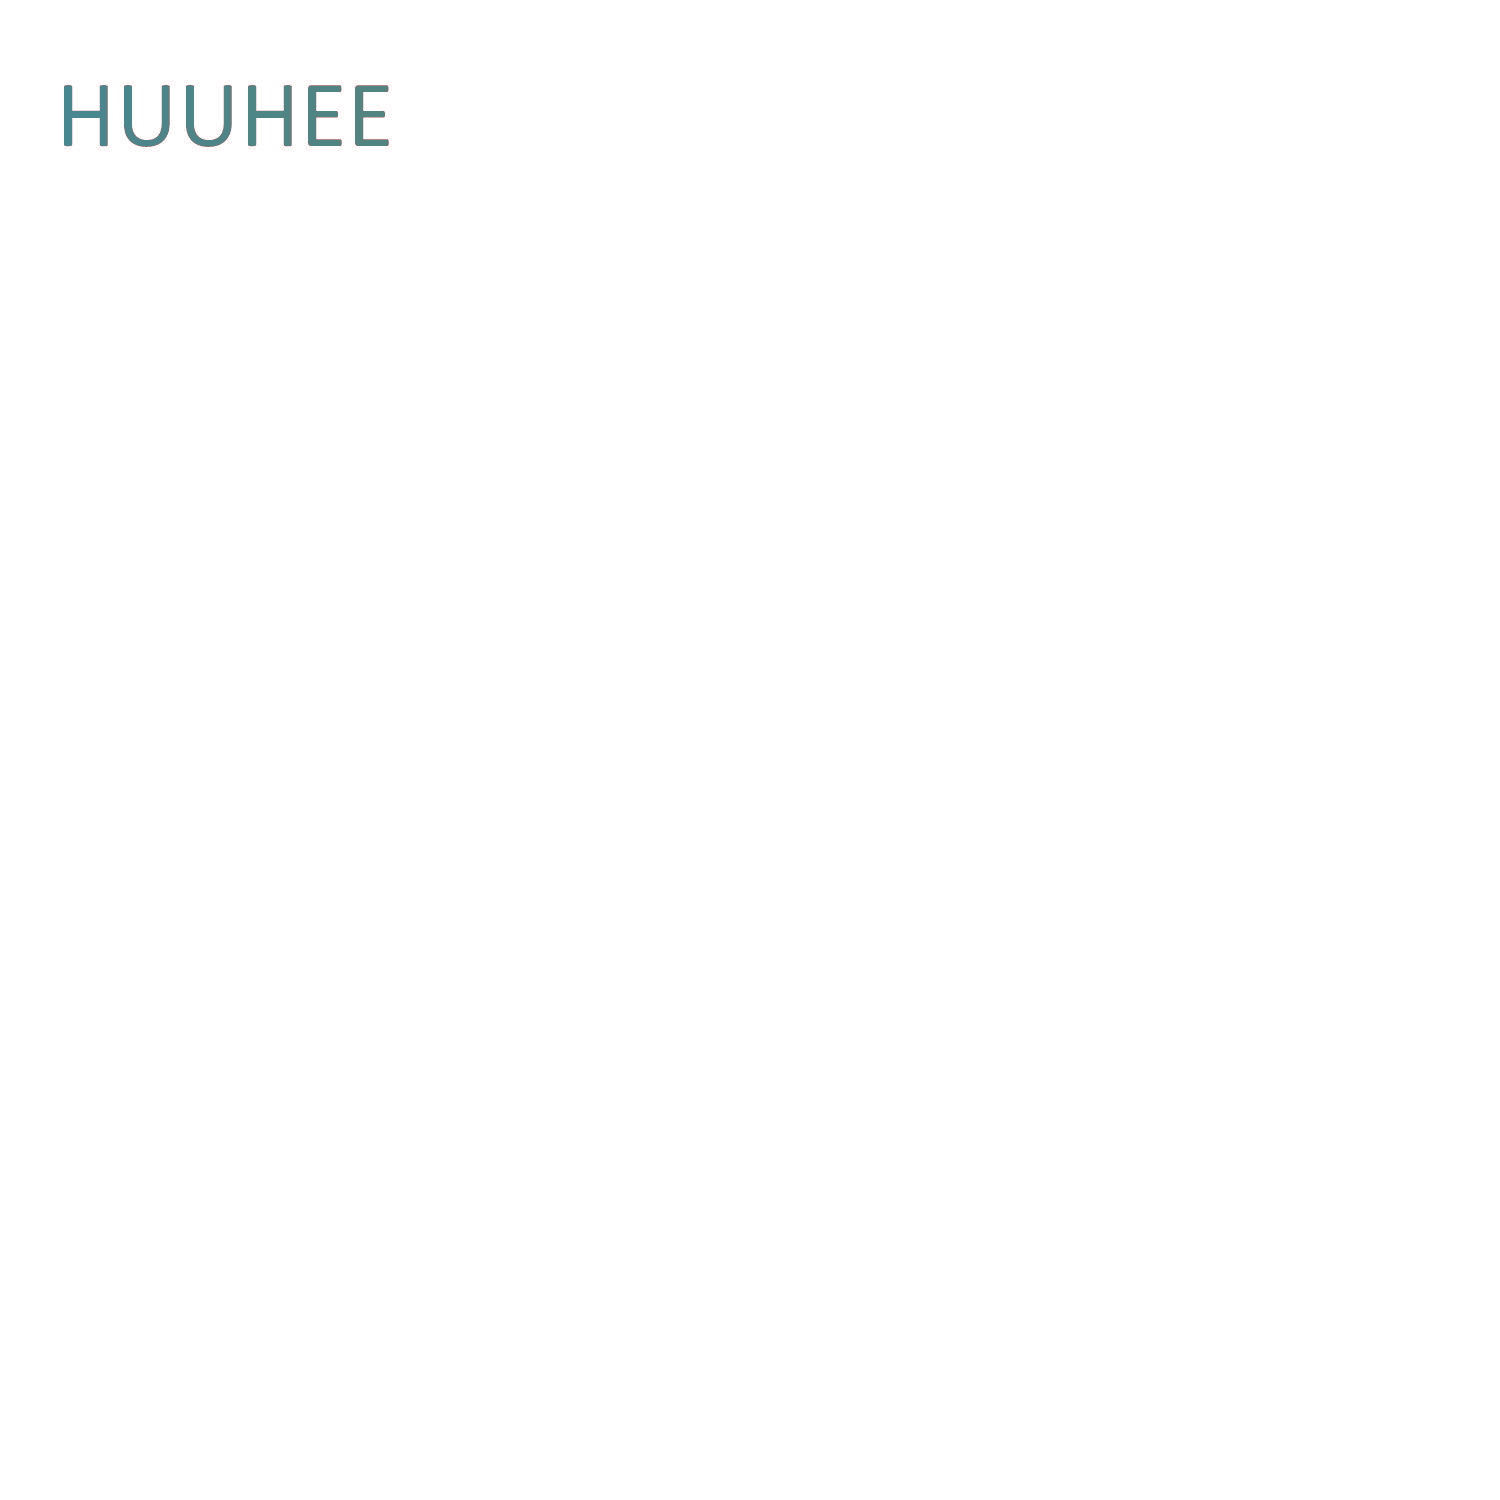 HUUHEE